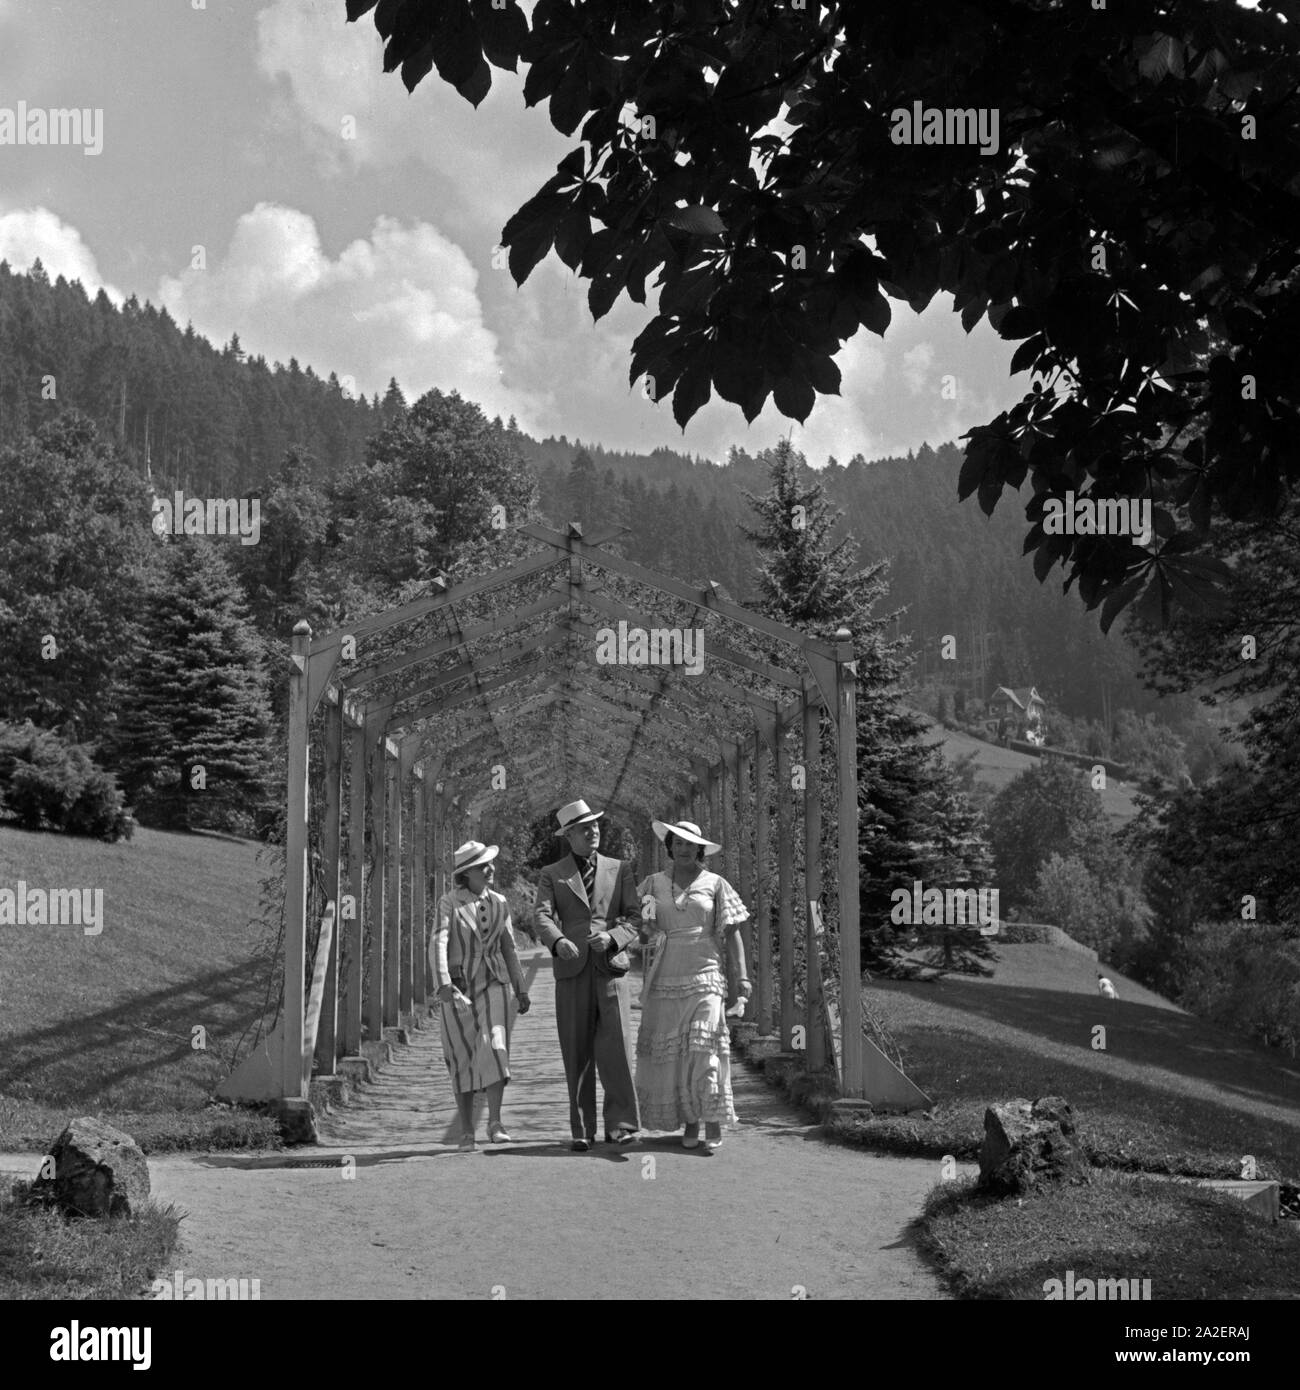 Ein Mann spaziert mit zwei Frauen durch ein dans Rankgerüst Wildbad im Schwarzwald, Deutschland 1930 er. Un homme et deux femmes se promenant dans une pergola à Wildbad en Forêt Noire, Allemagne 1930. Banque D'Images